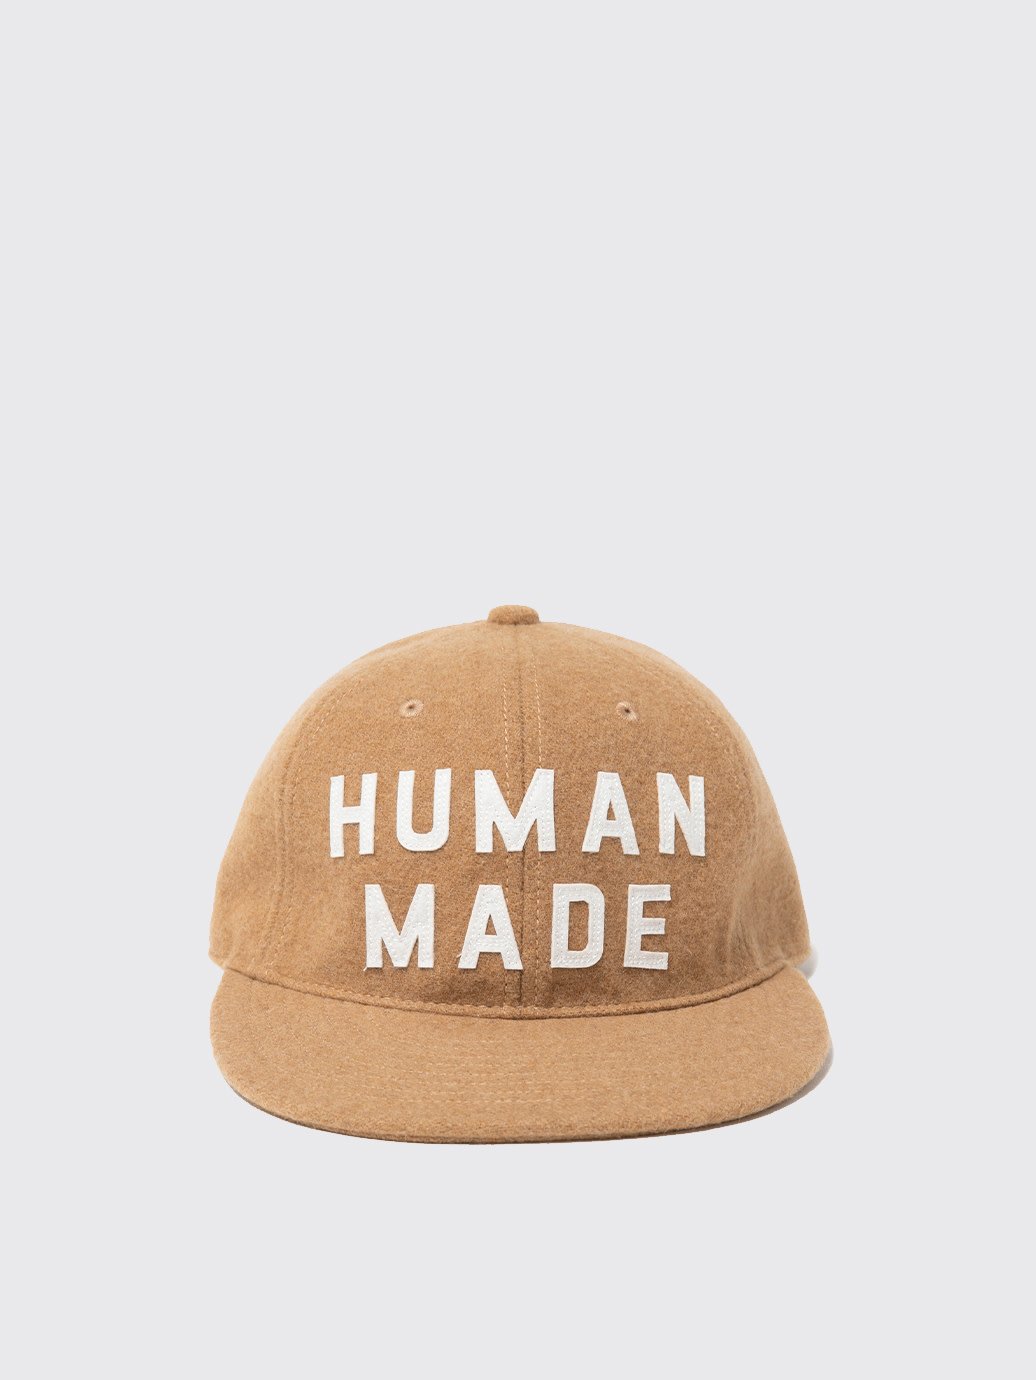 Human Made 6 Panel Wool Cap Logo FW22 Beige – OALLERY